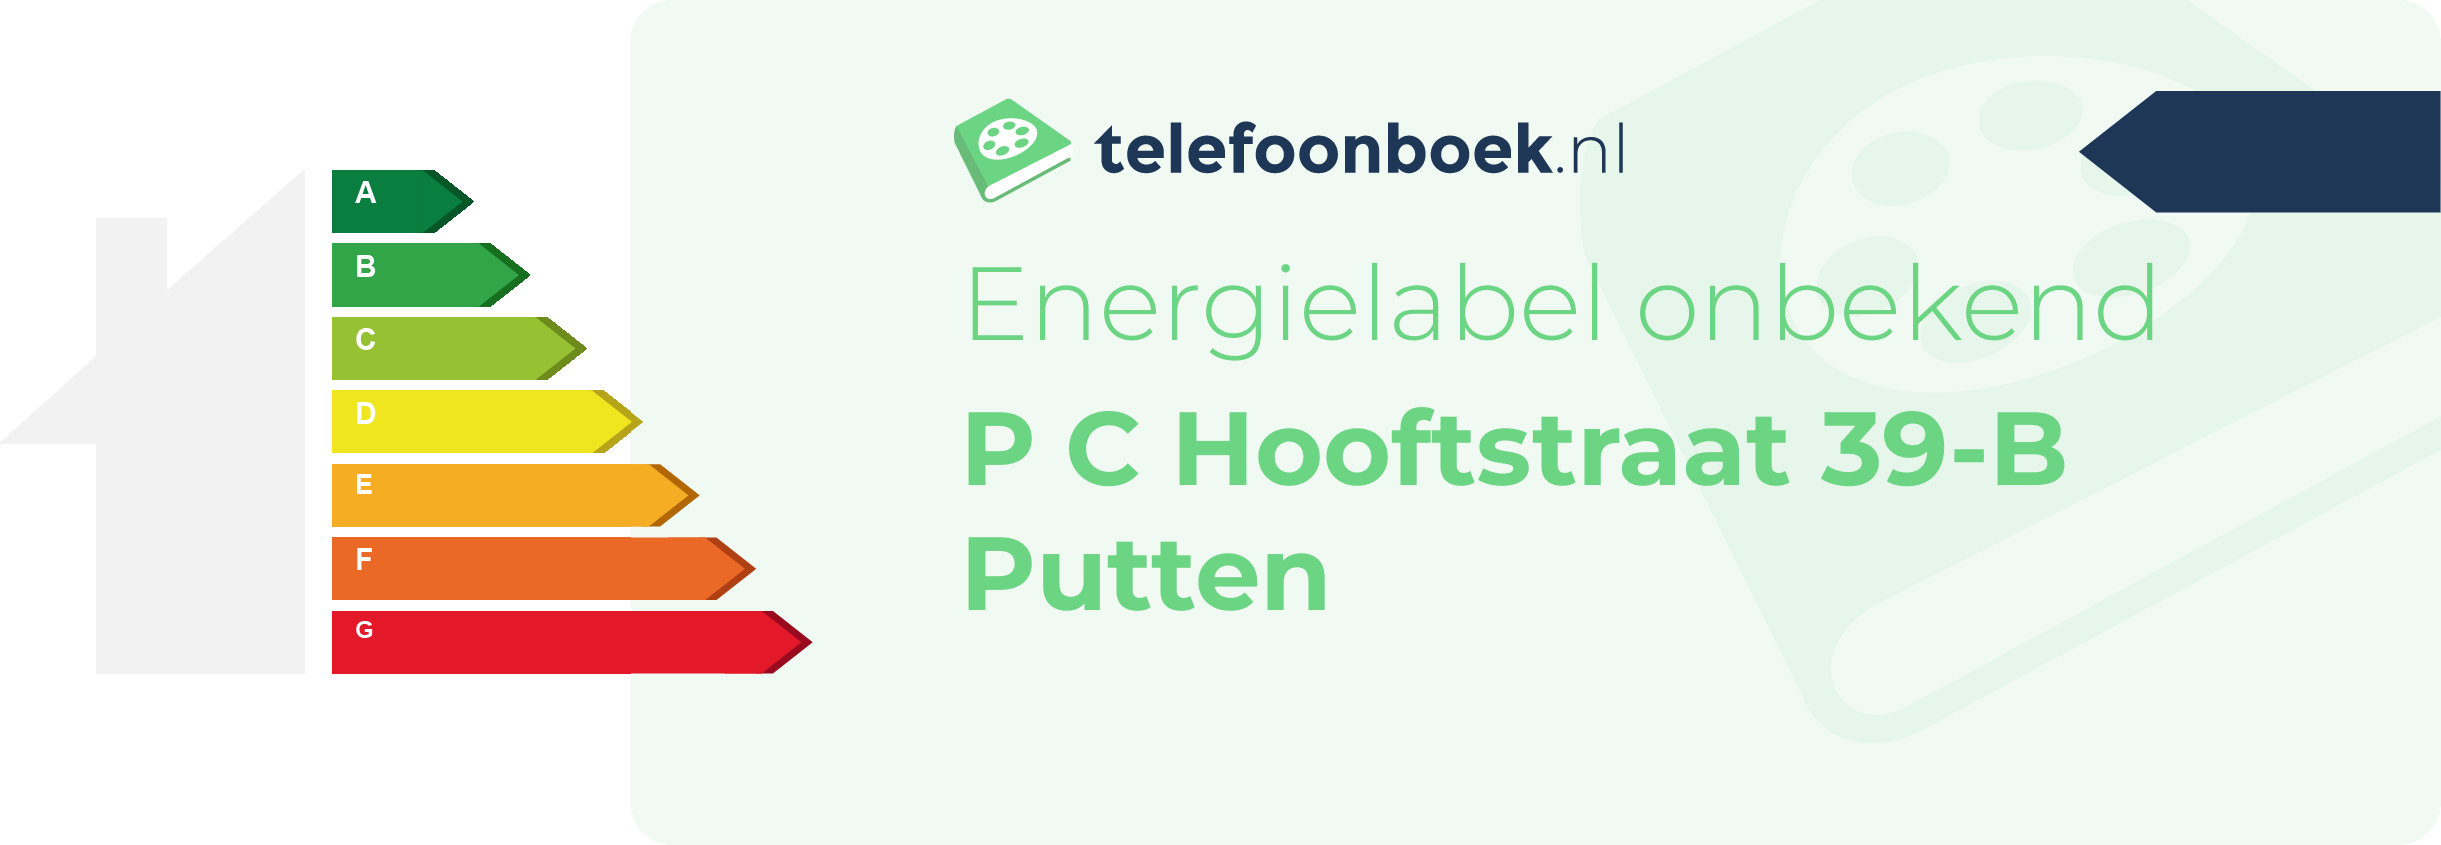 Energielabel P C Hooftstraat 39-B Putten